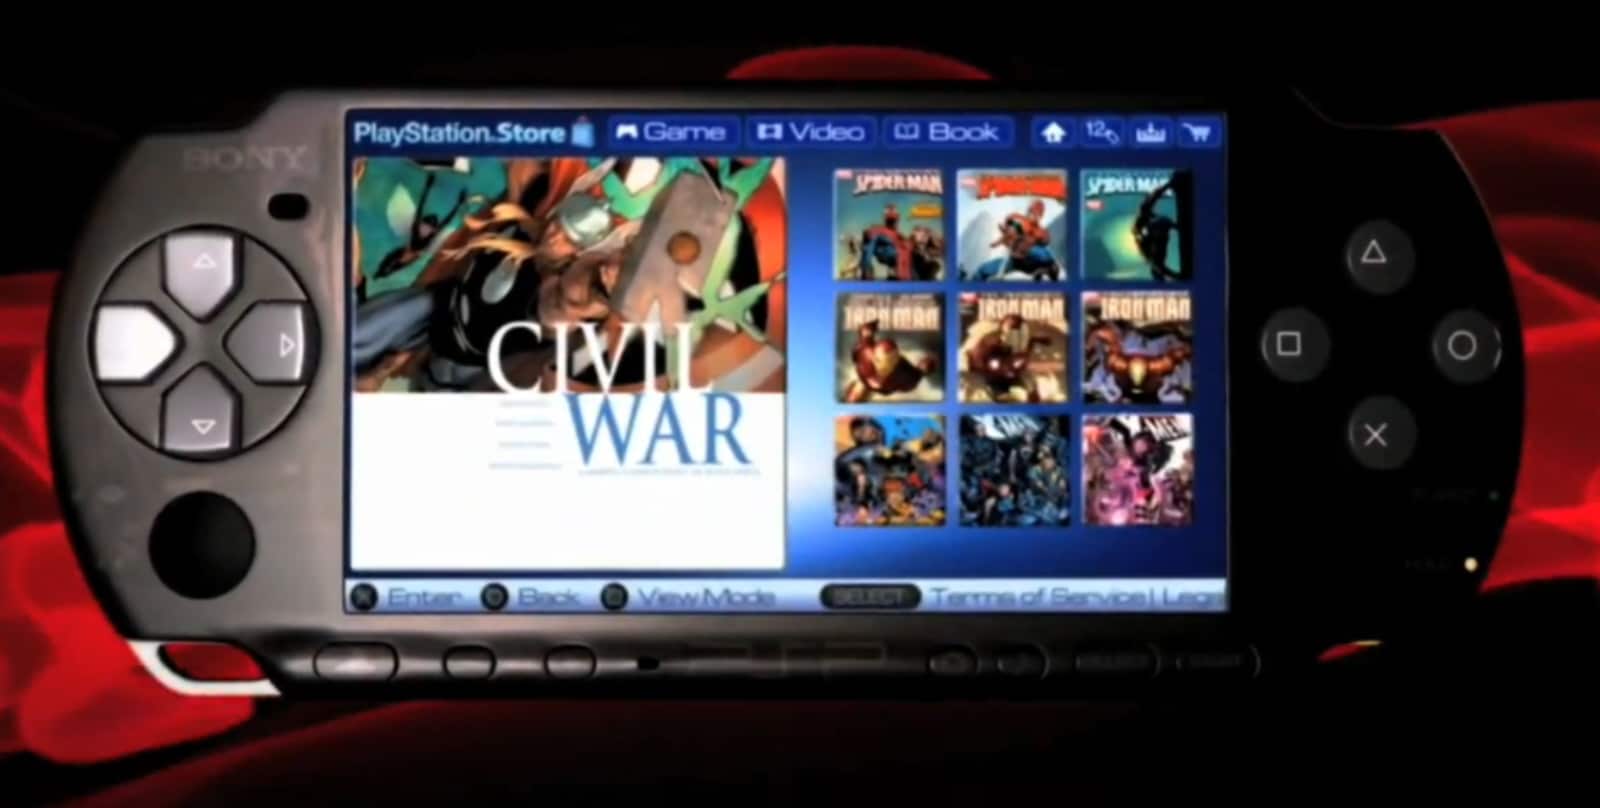 Gøre klart overliggende titel PSP Digital Comics gets last update - Video Games Blogger